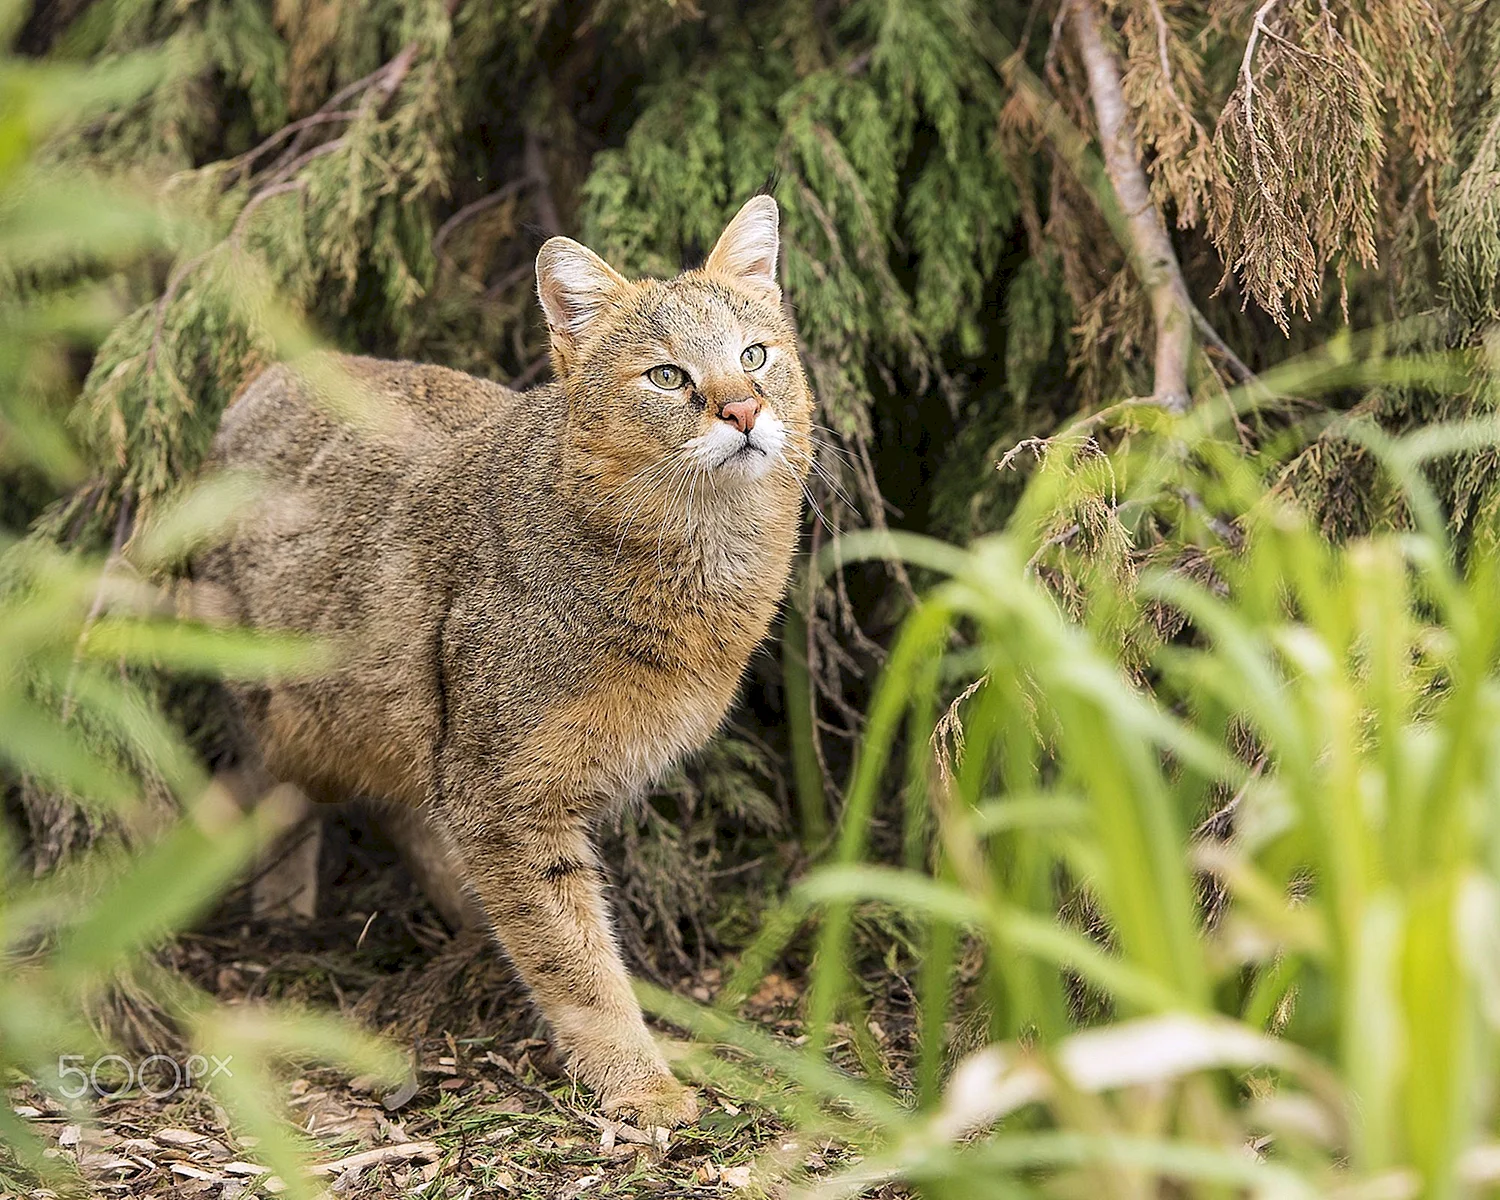 Кавказский камышовый кот